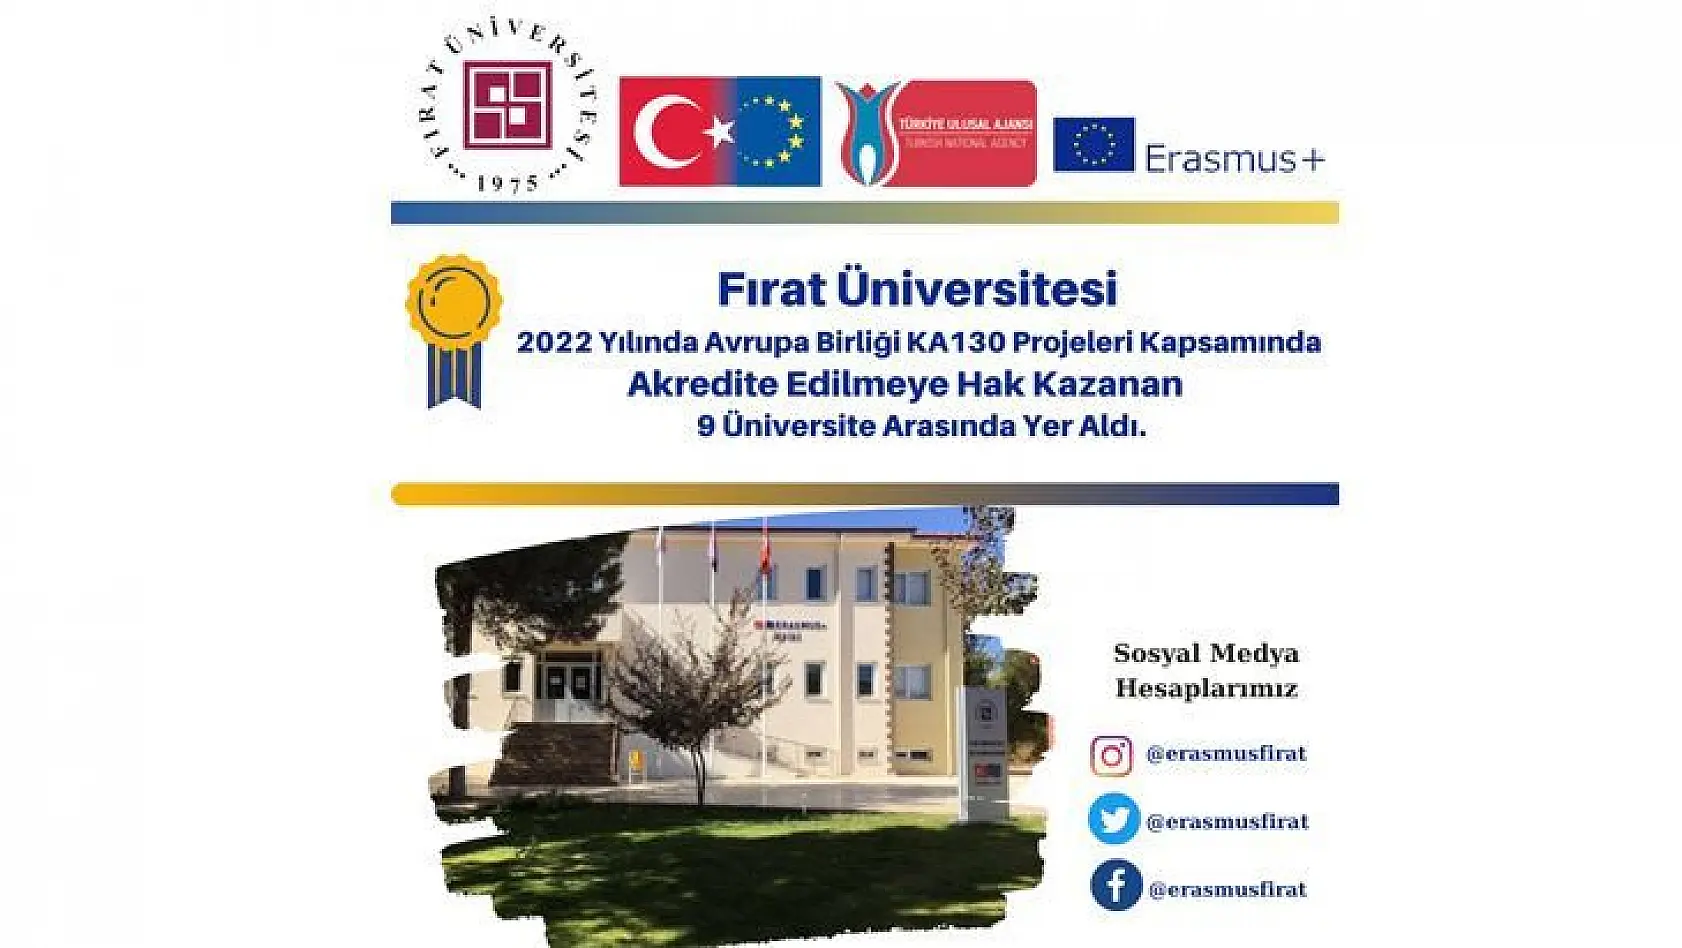 Fırat Üniversitesi 'Avrupa Birliği Ka130 Projeleri' Kapsamında Akredite Edilen 9 Üniversiteden Biri Oldu